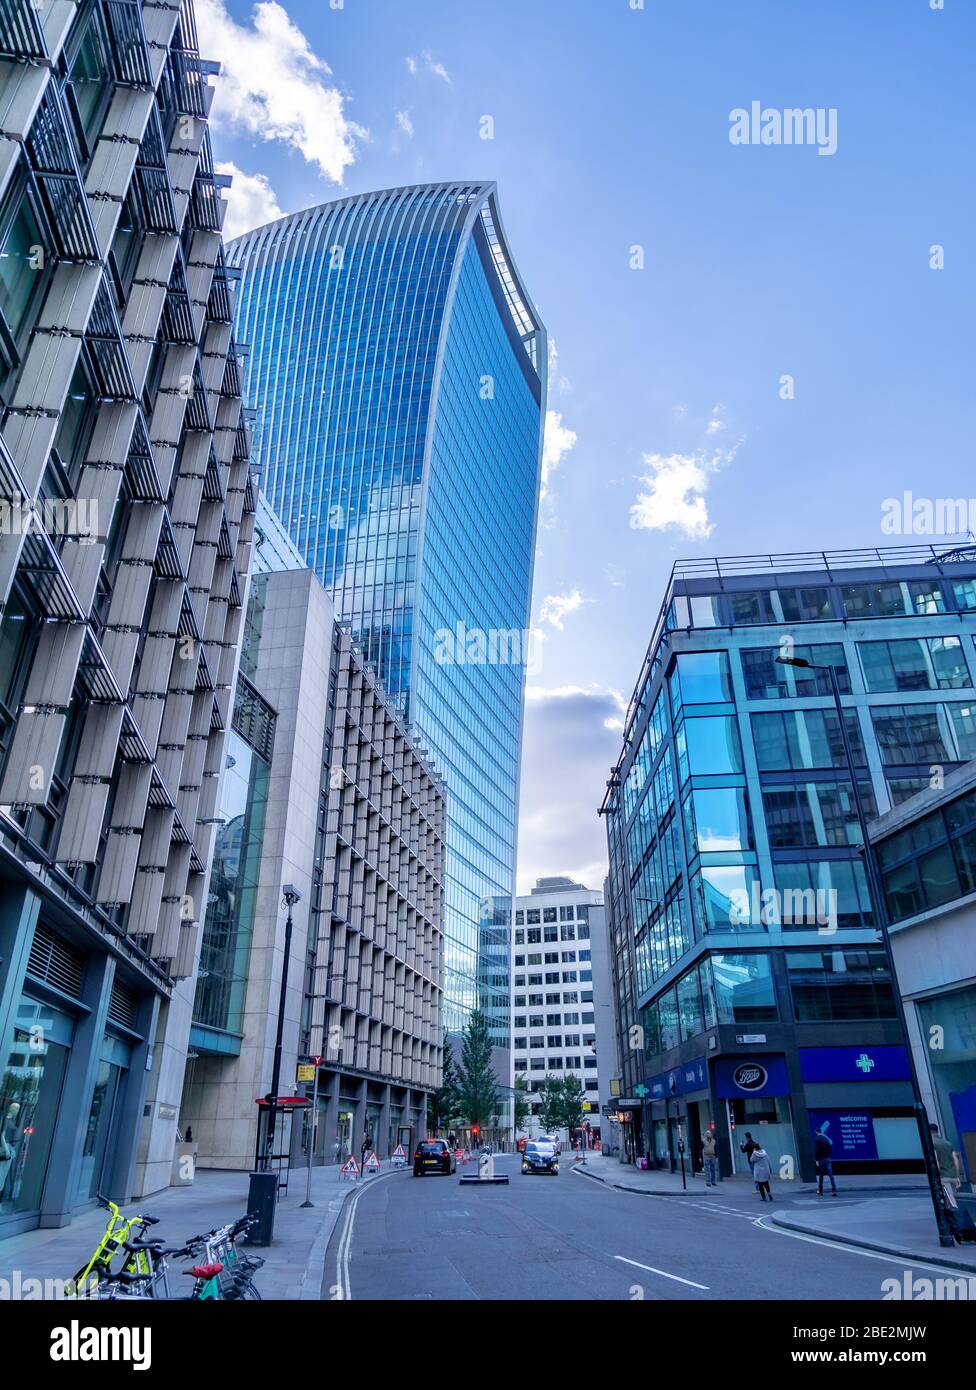 Londres, Angleterre, Royaume-Uni - 8 septembre 2019 : le bâtiment moderne et futuriste Walkie Talkie dans la ville de Londres Banque D'Images